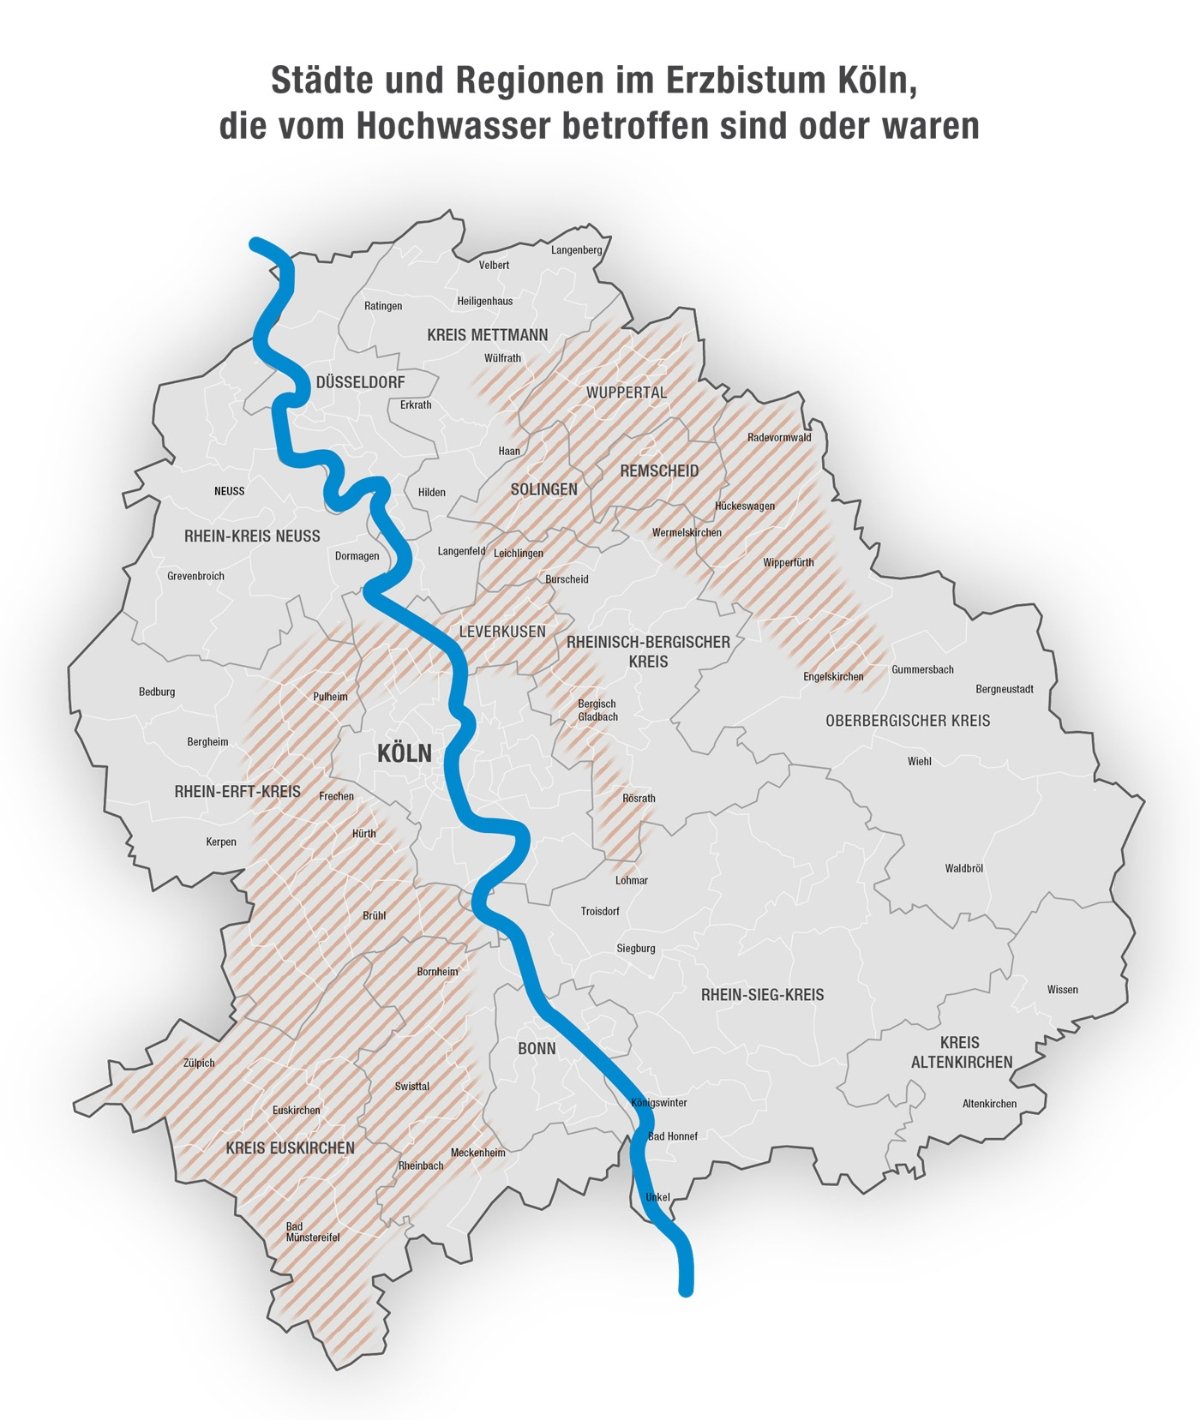 Betroffene Städte und Regionen im Erzbistum Köln